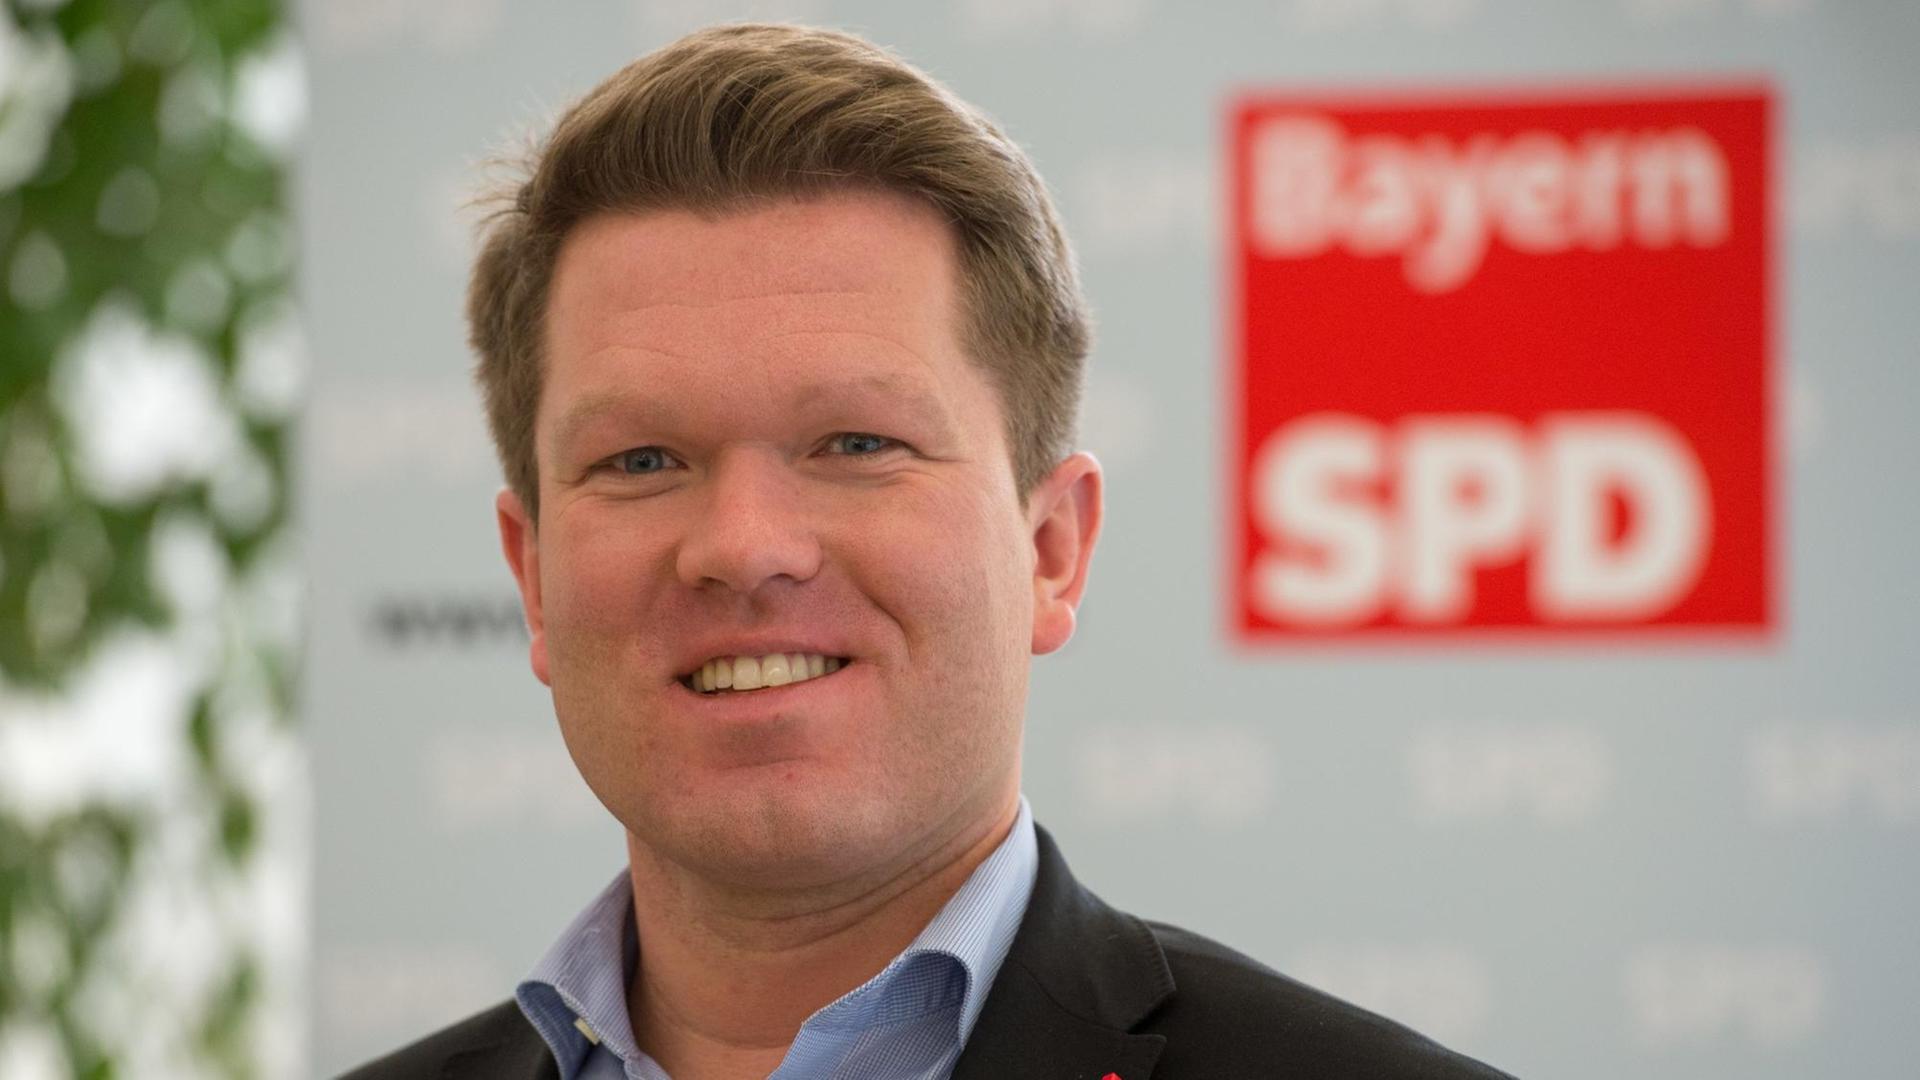 Florian Post von der Bayern-SPD, aufgenommen am 08.12.2012 in Dingolfing (Bayern) während der Landesvertreter-Versammlung der Bayern-SPD.